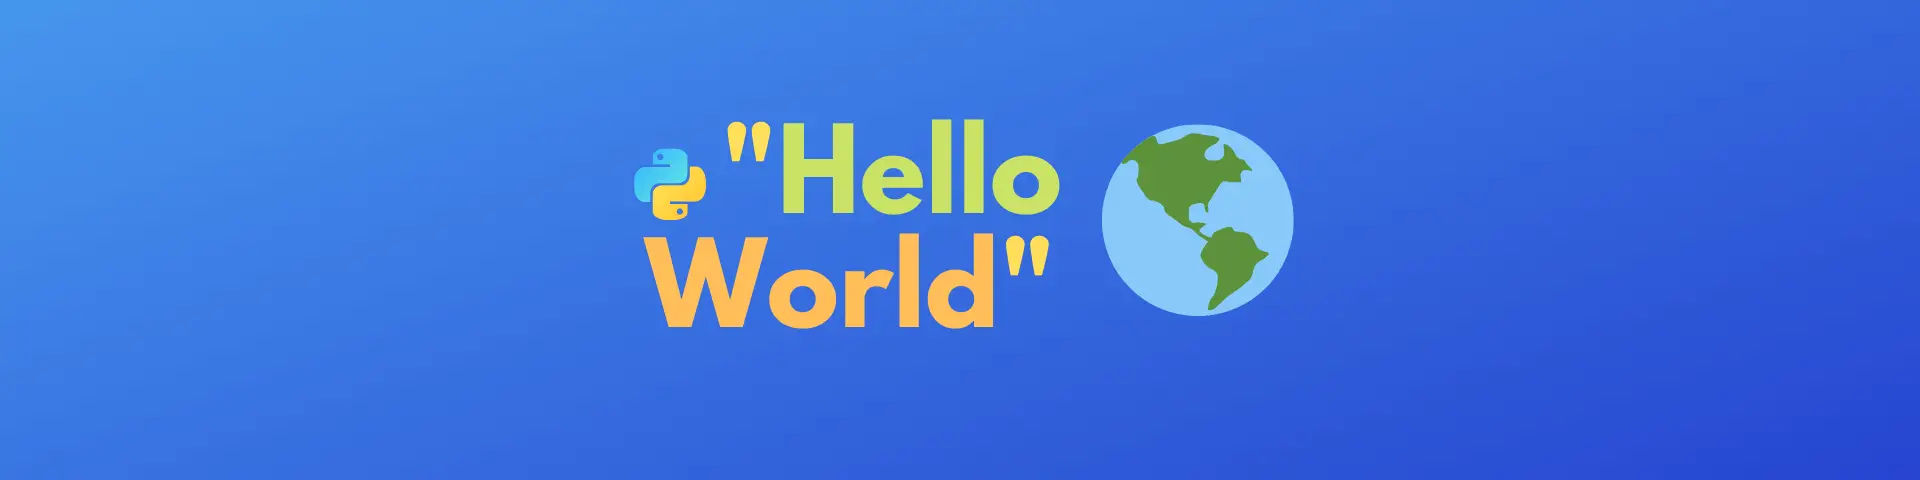 Print Hello World in Python